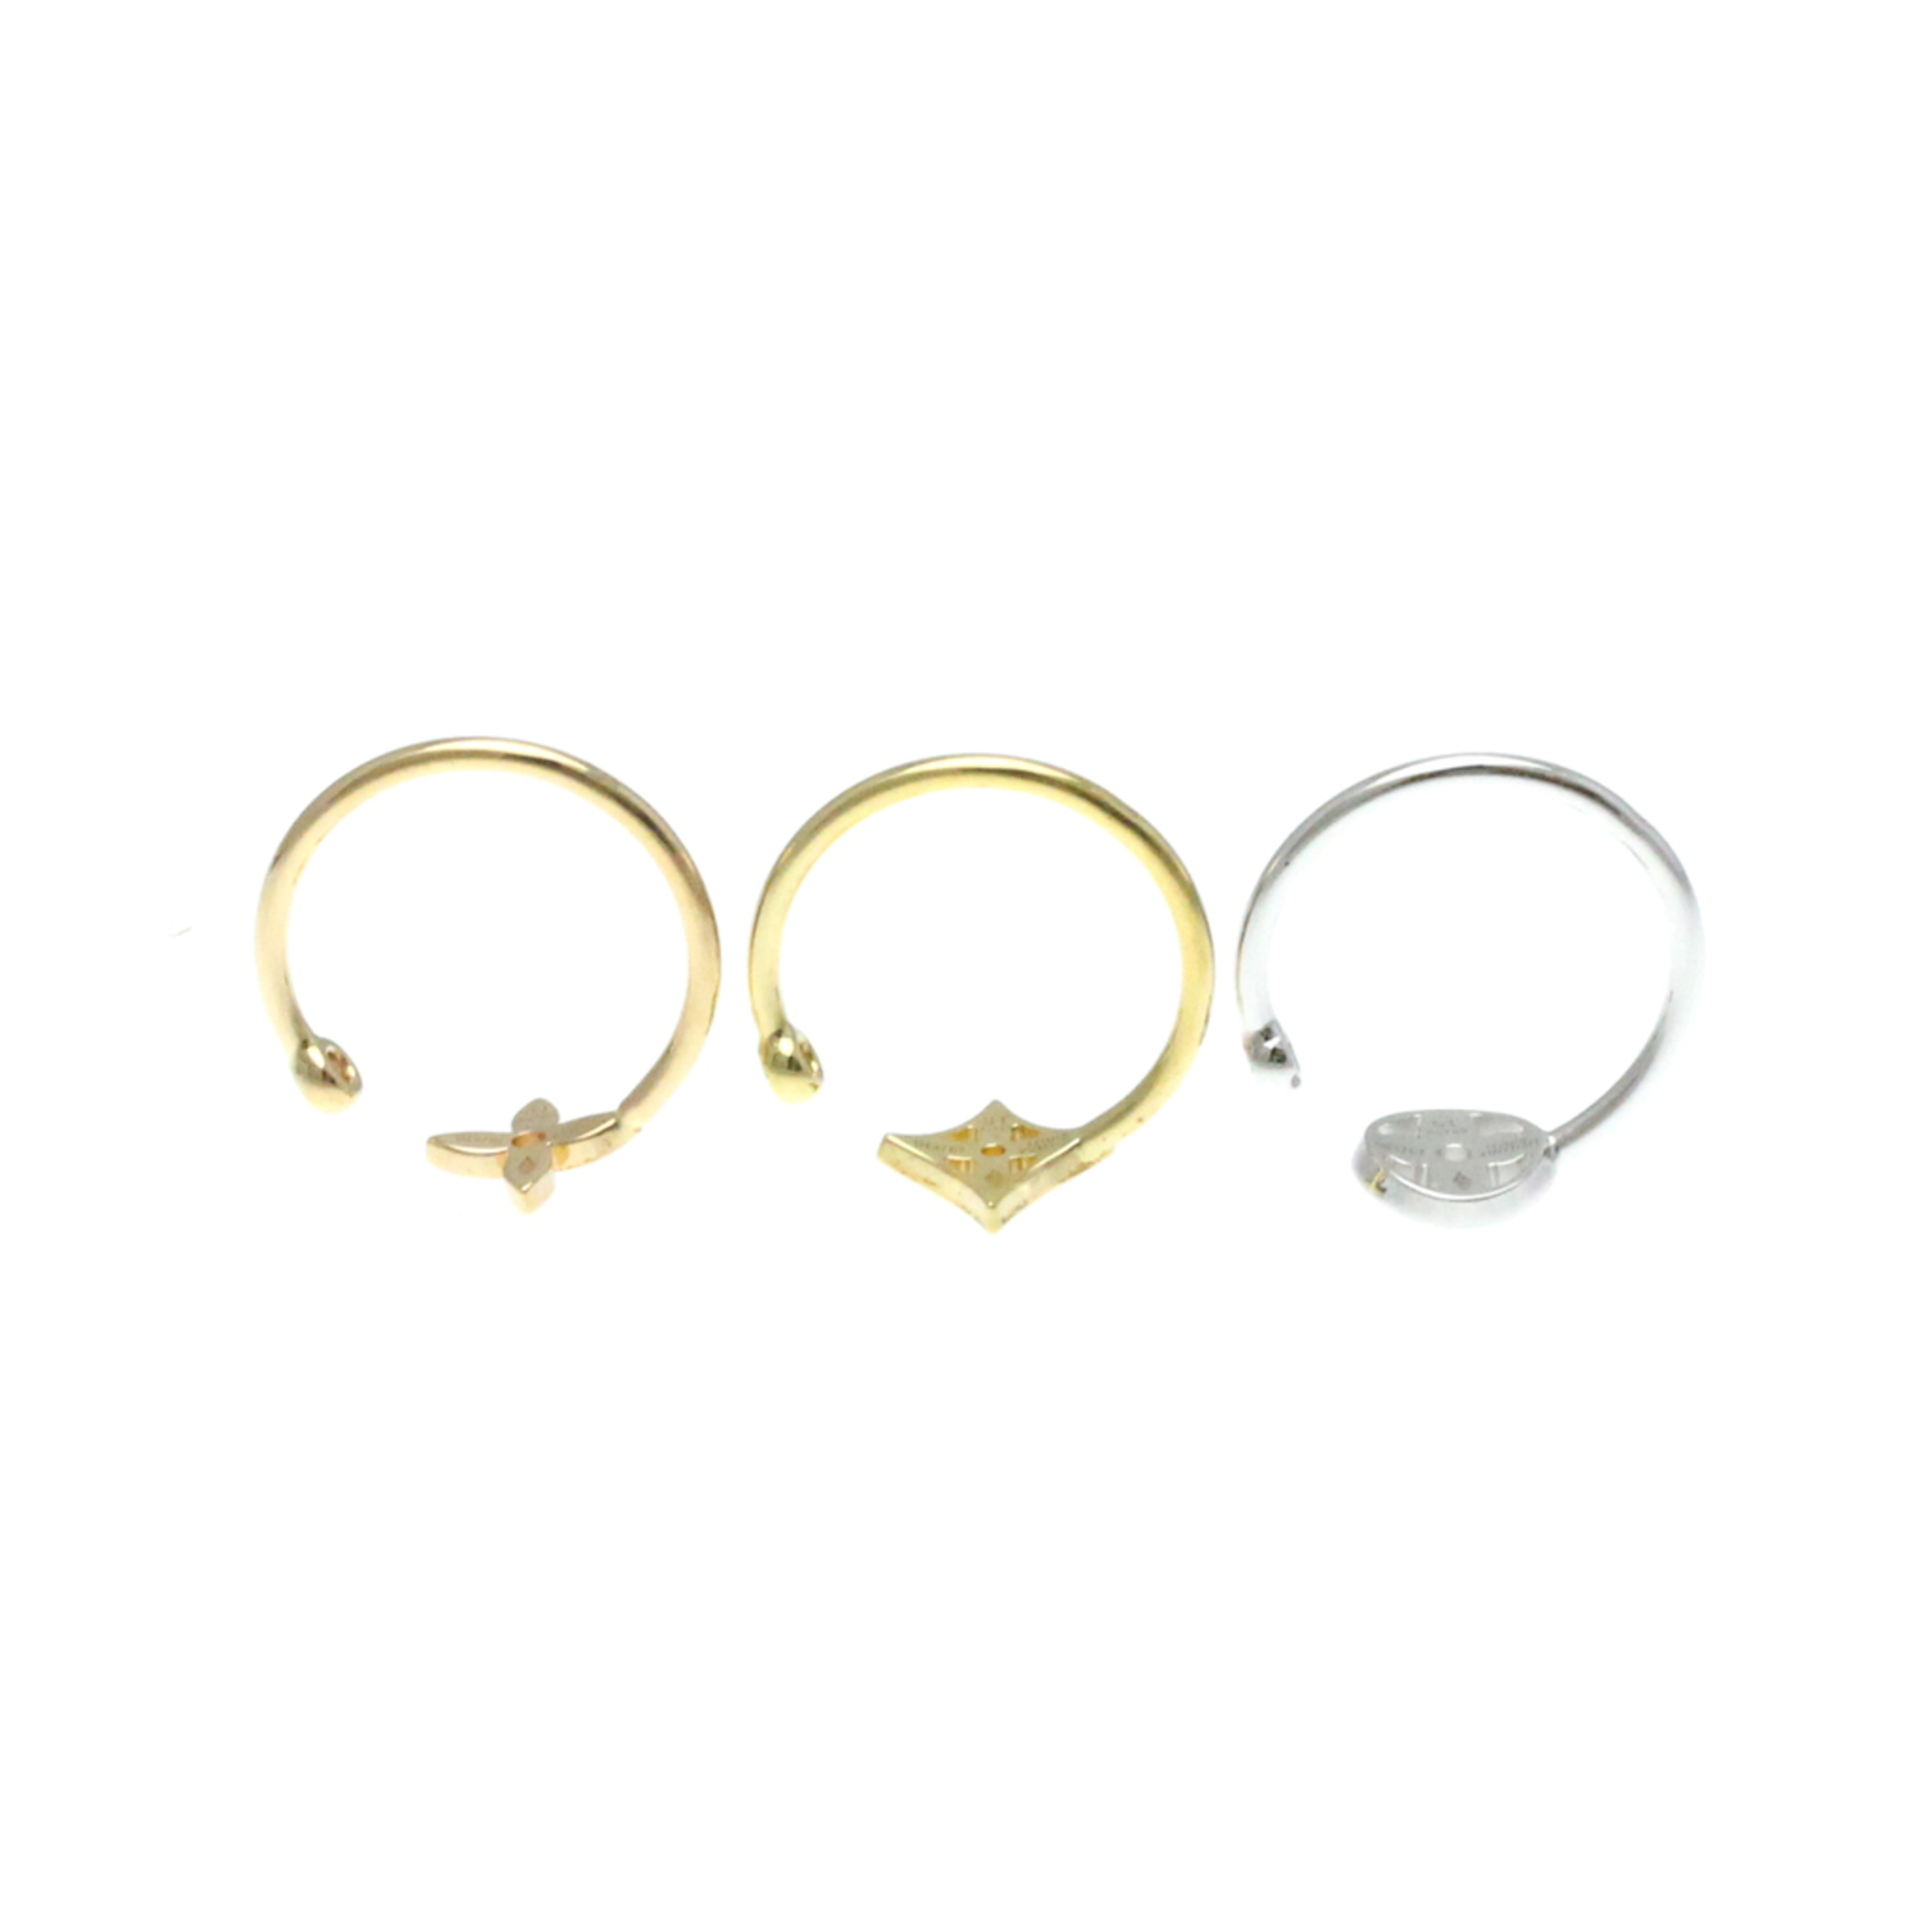 Louis Vuitton Berg Monogram Idylle Ring Q9F15G Pink Gold (18K),White Gold (18K),Yellow Gold (18K) Fashion Diamond Band Ring Gold